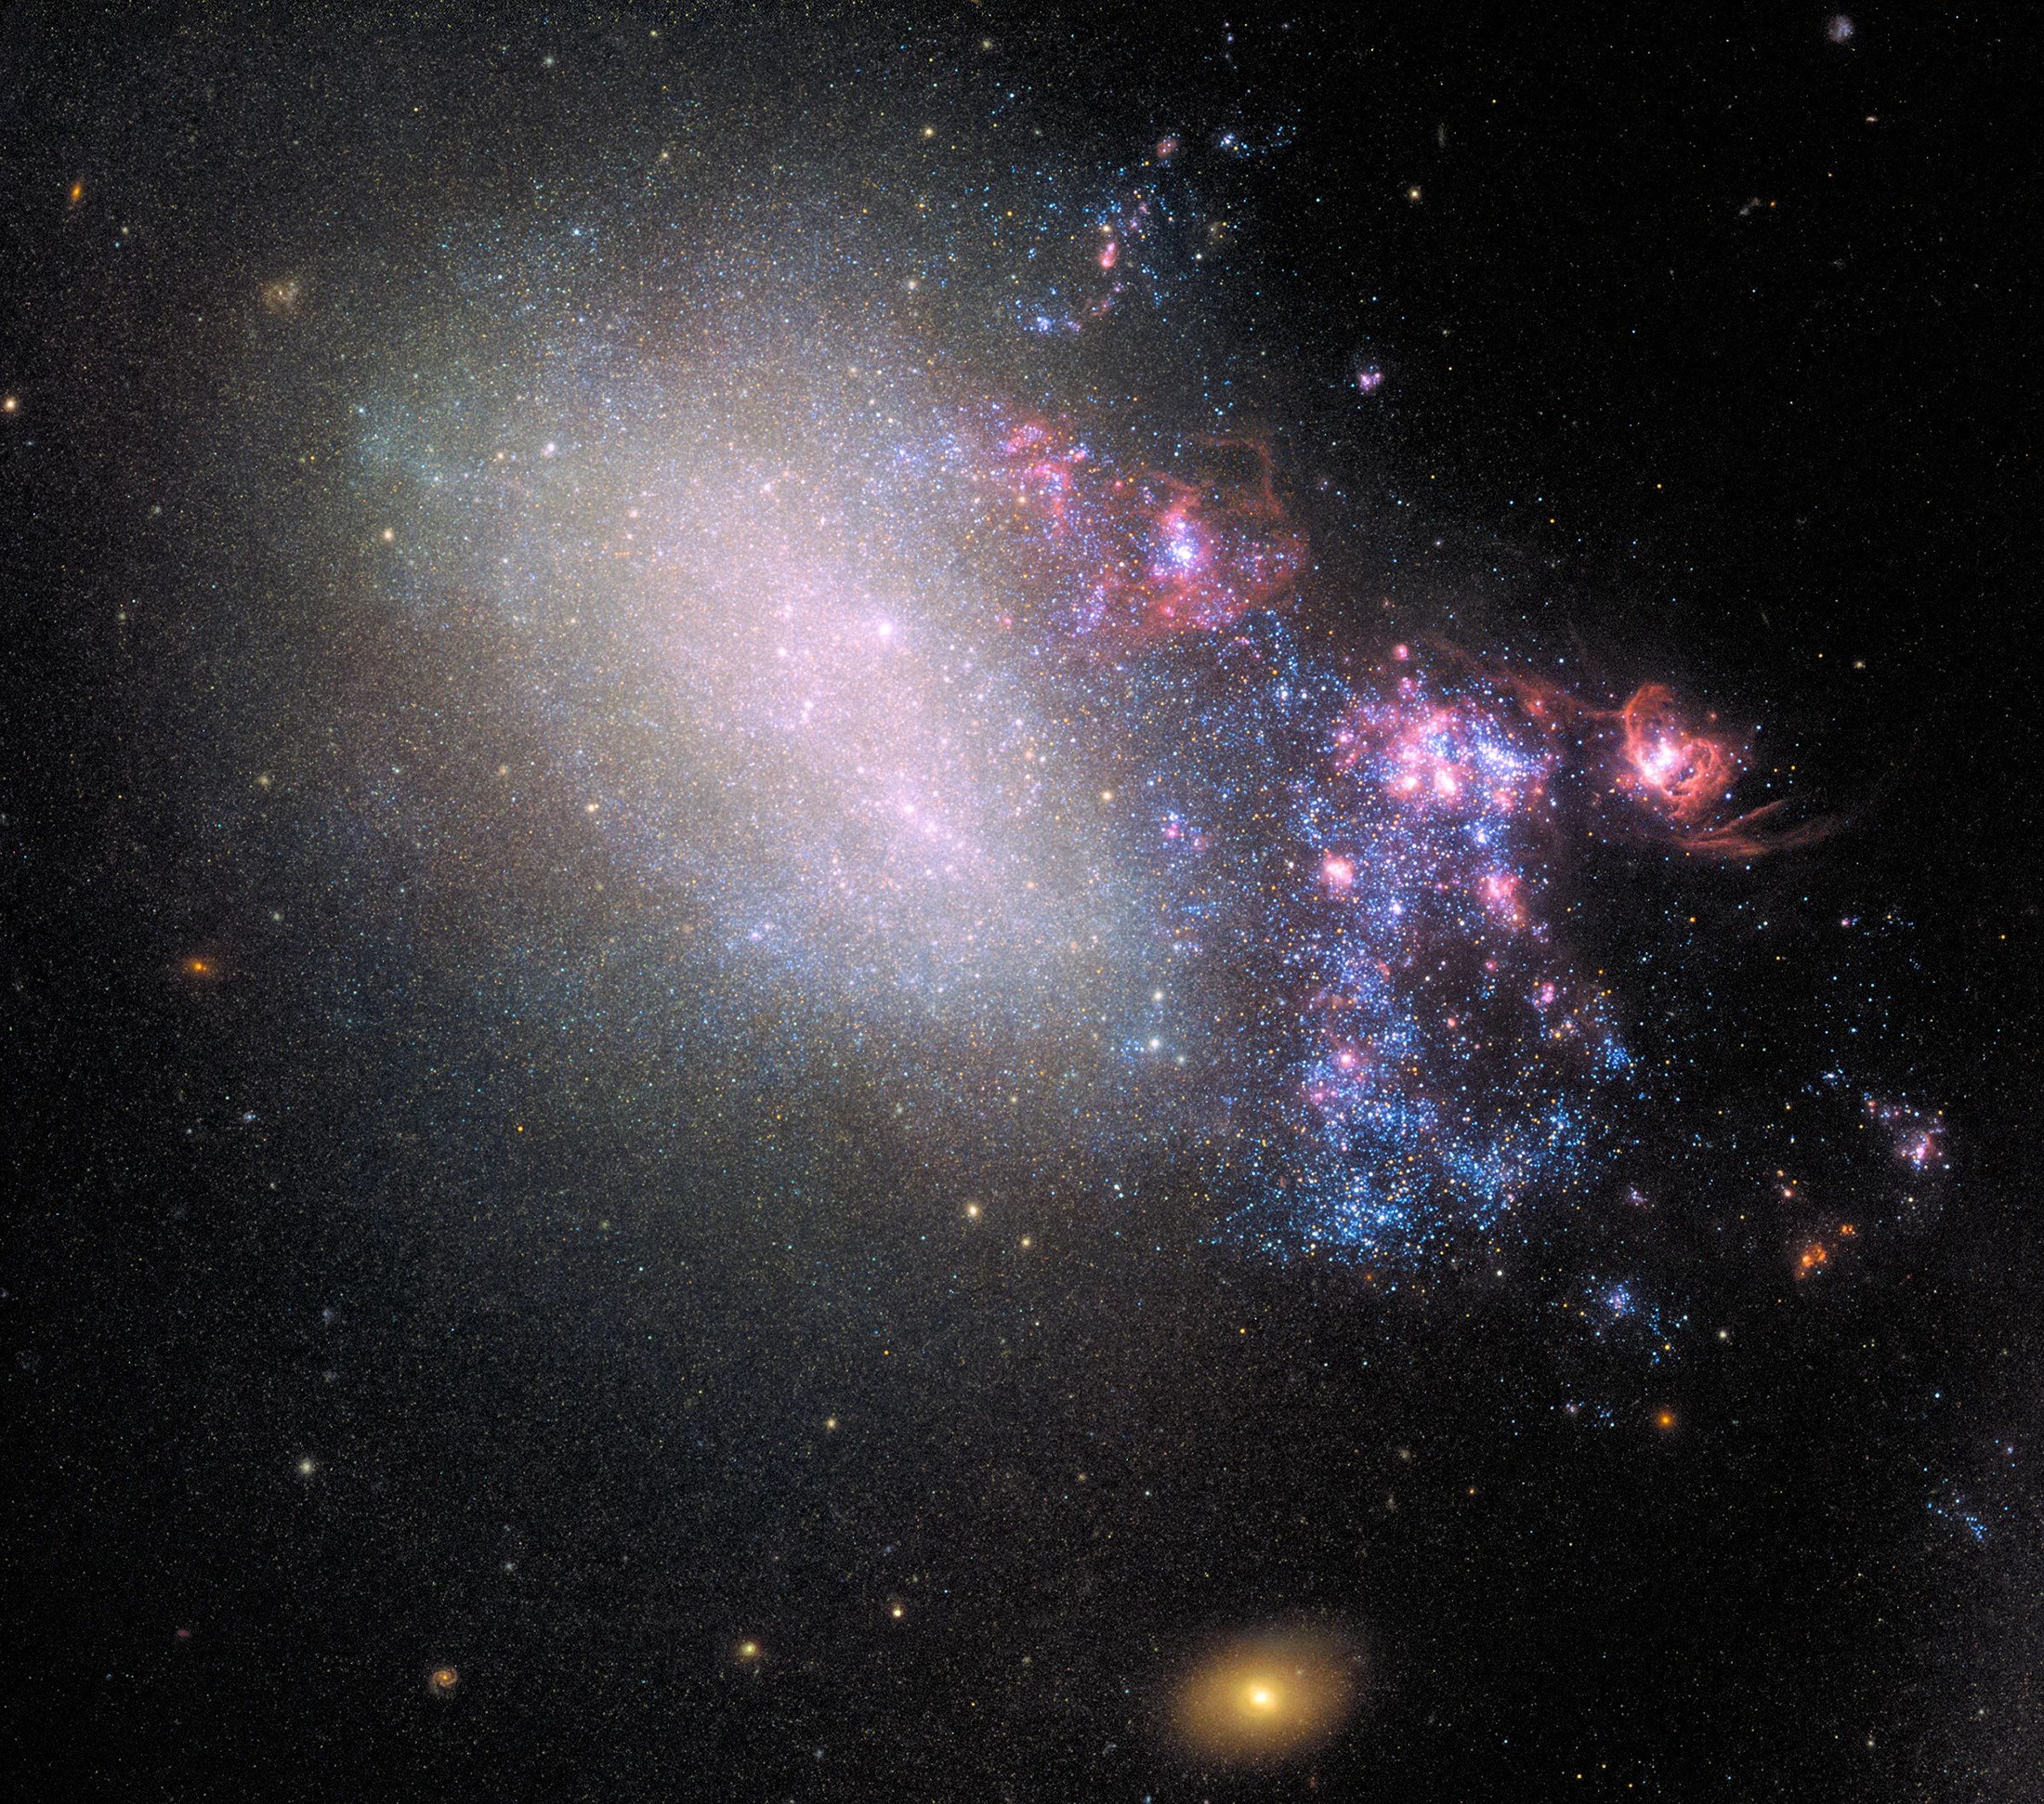 Hubble image of irregular galaxy ngc 4485